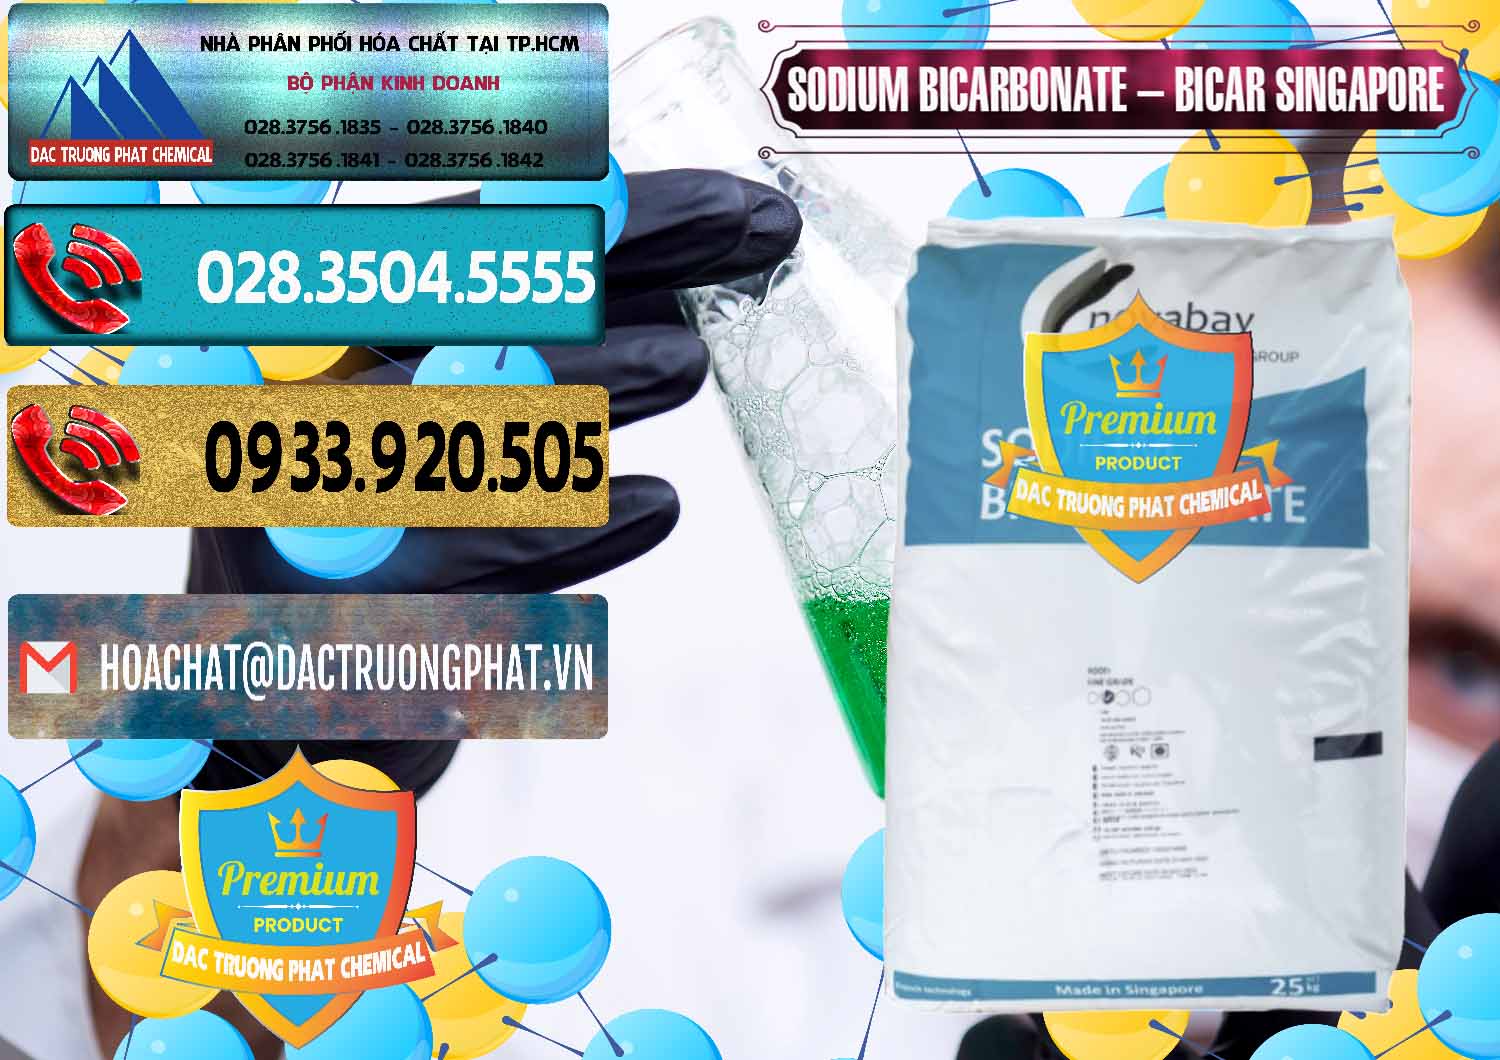 Chuyên cung cấp & bán Sodium Bicarbonate – Bicar NaHCO3 Singapore - 0411 - Nhà nhập khẩu ( phân phối ) hóa chất tại TP.HCM - hoachatdetnhuom.com